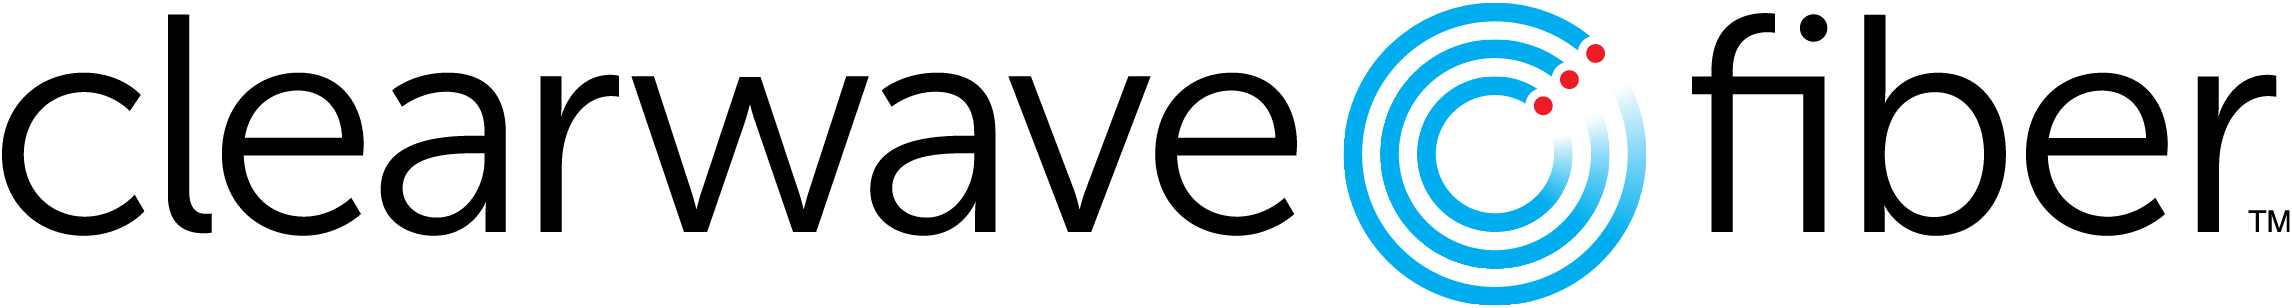 Clearewave Fiber logo